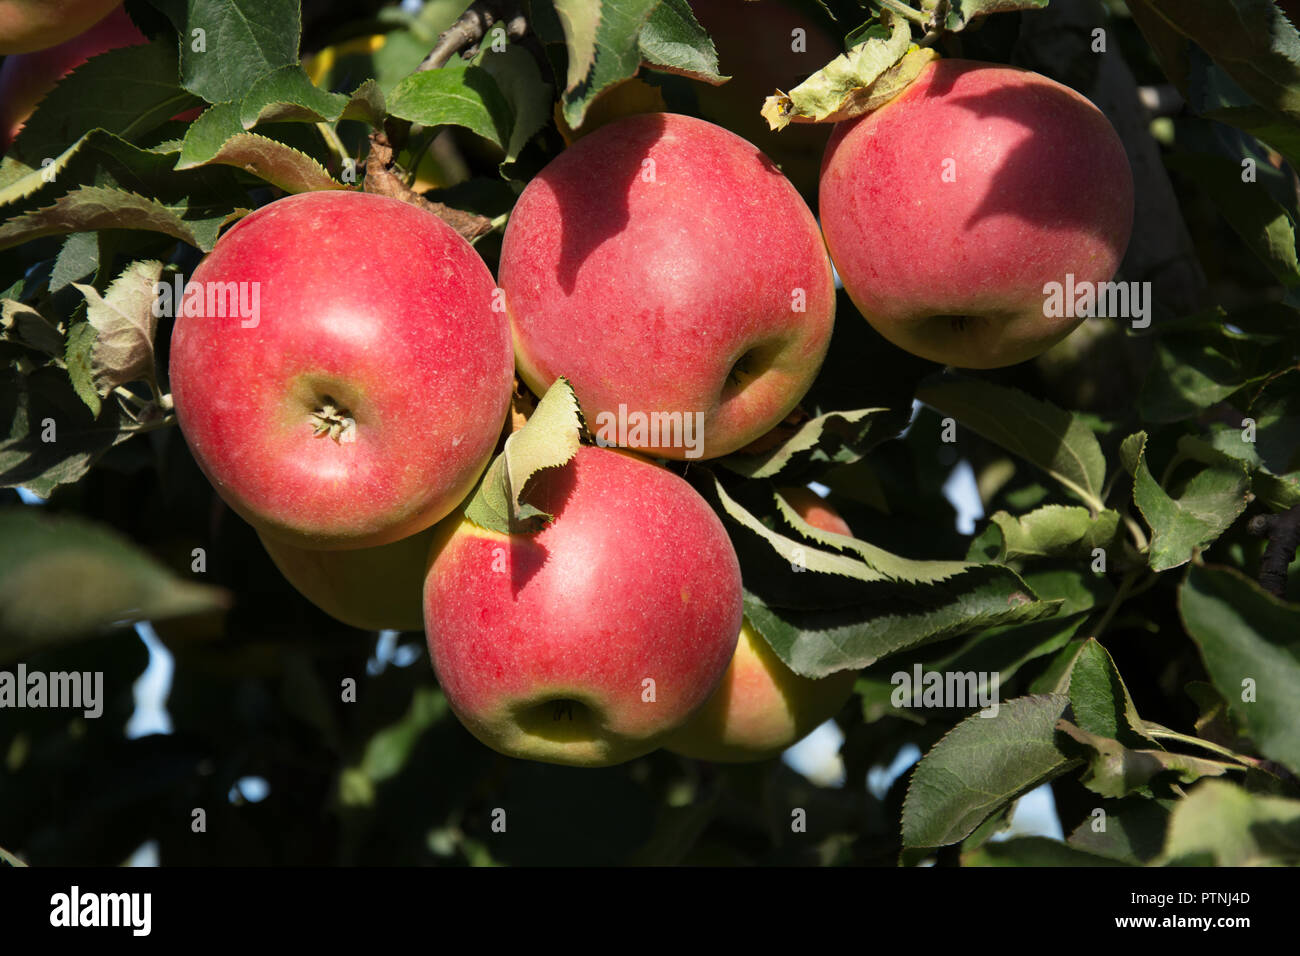 сорта яблонь для ленинградской области с фото